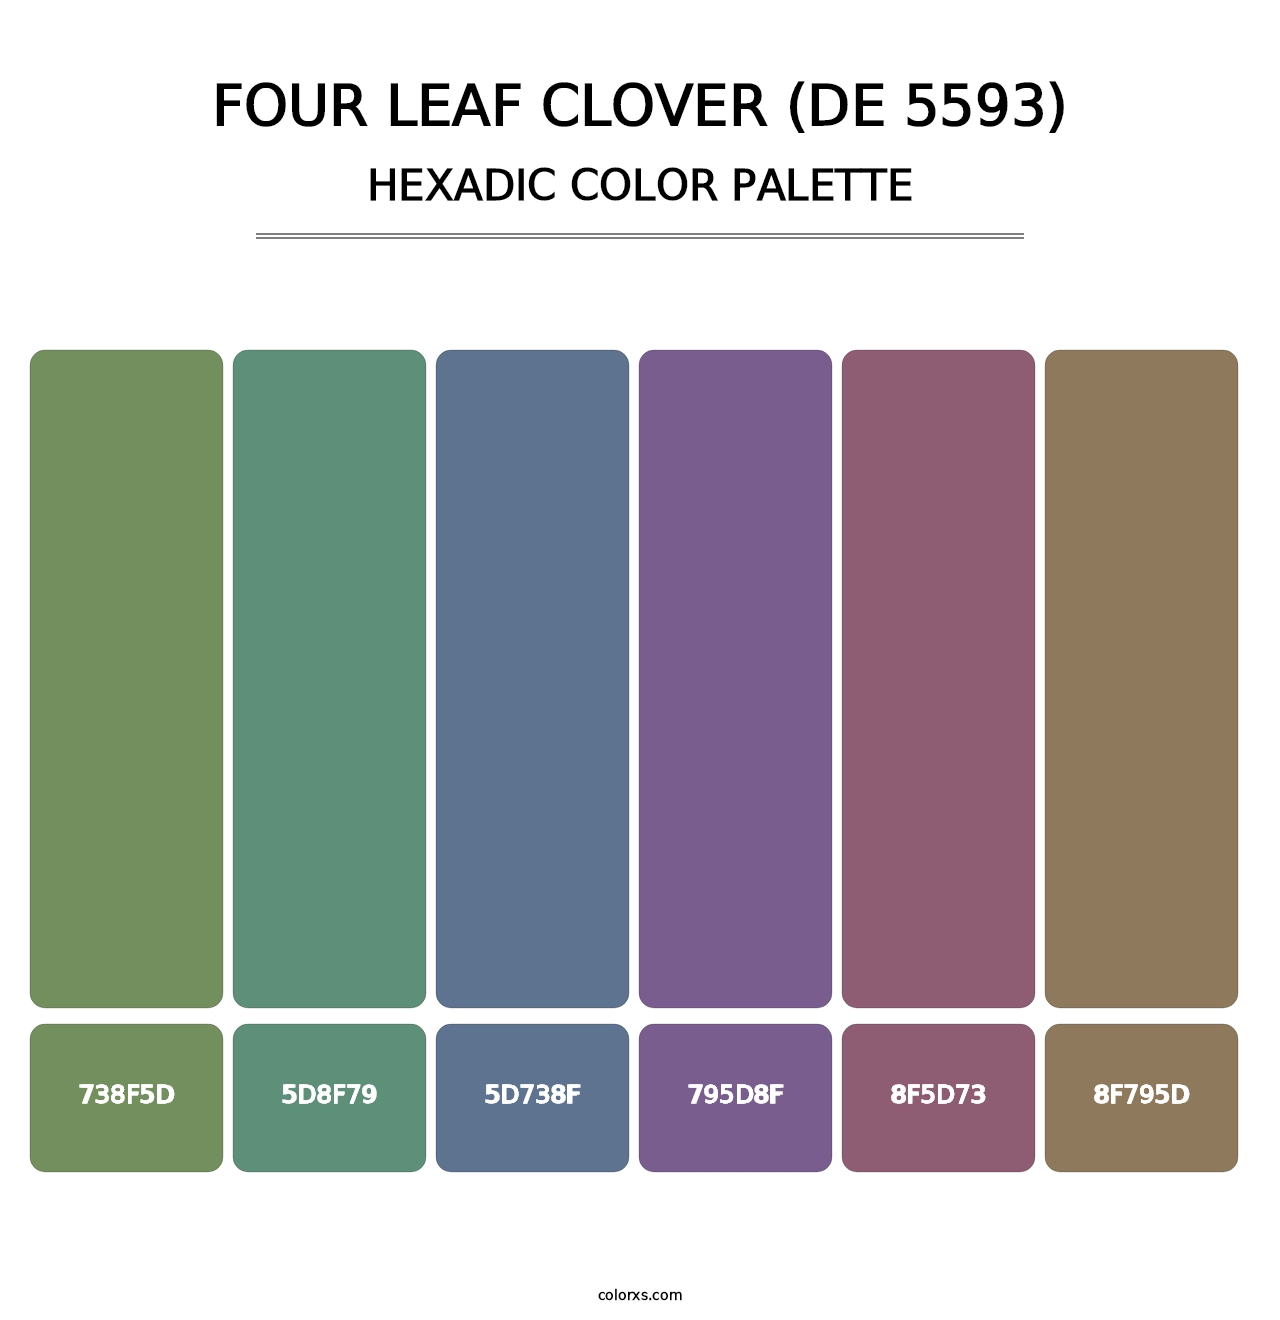 Four Leaf Clover (DE 5593) - Hexadic Color Palette